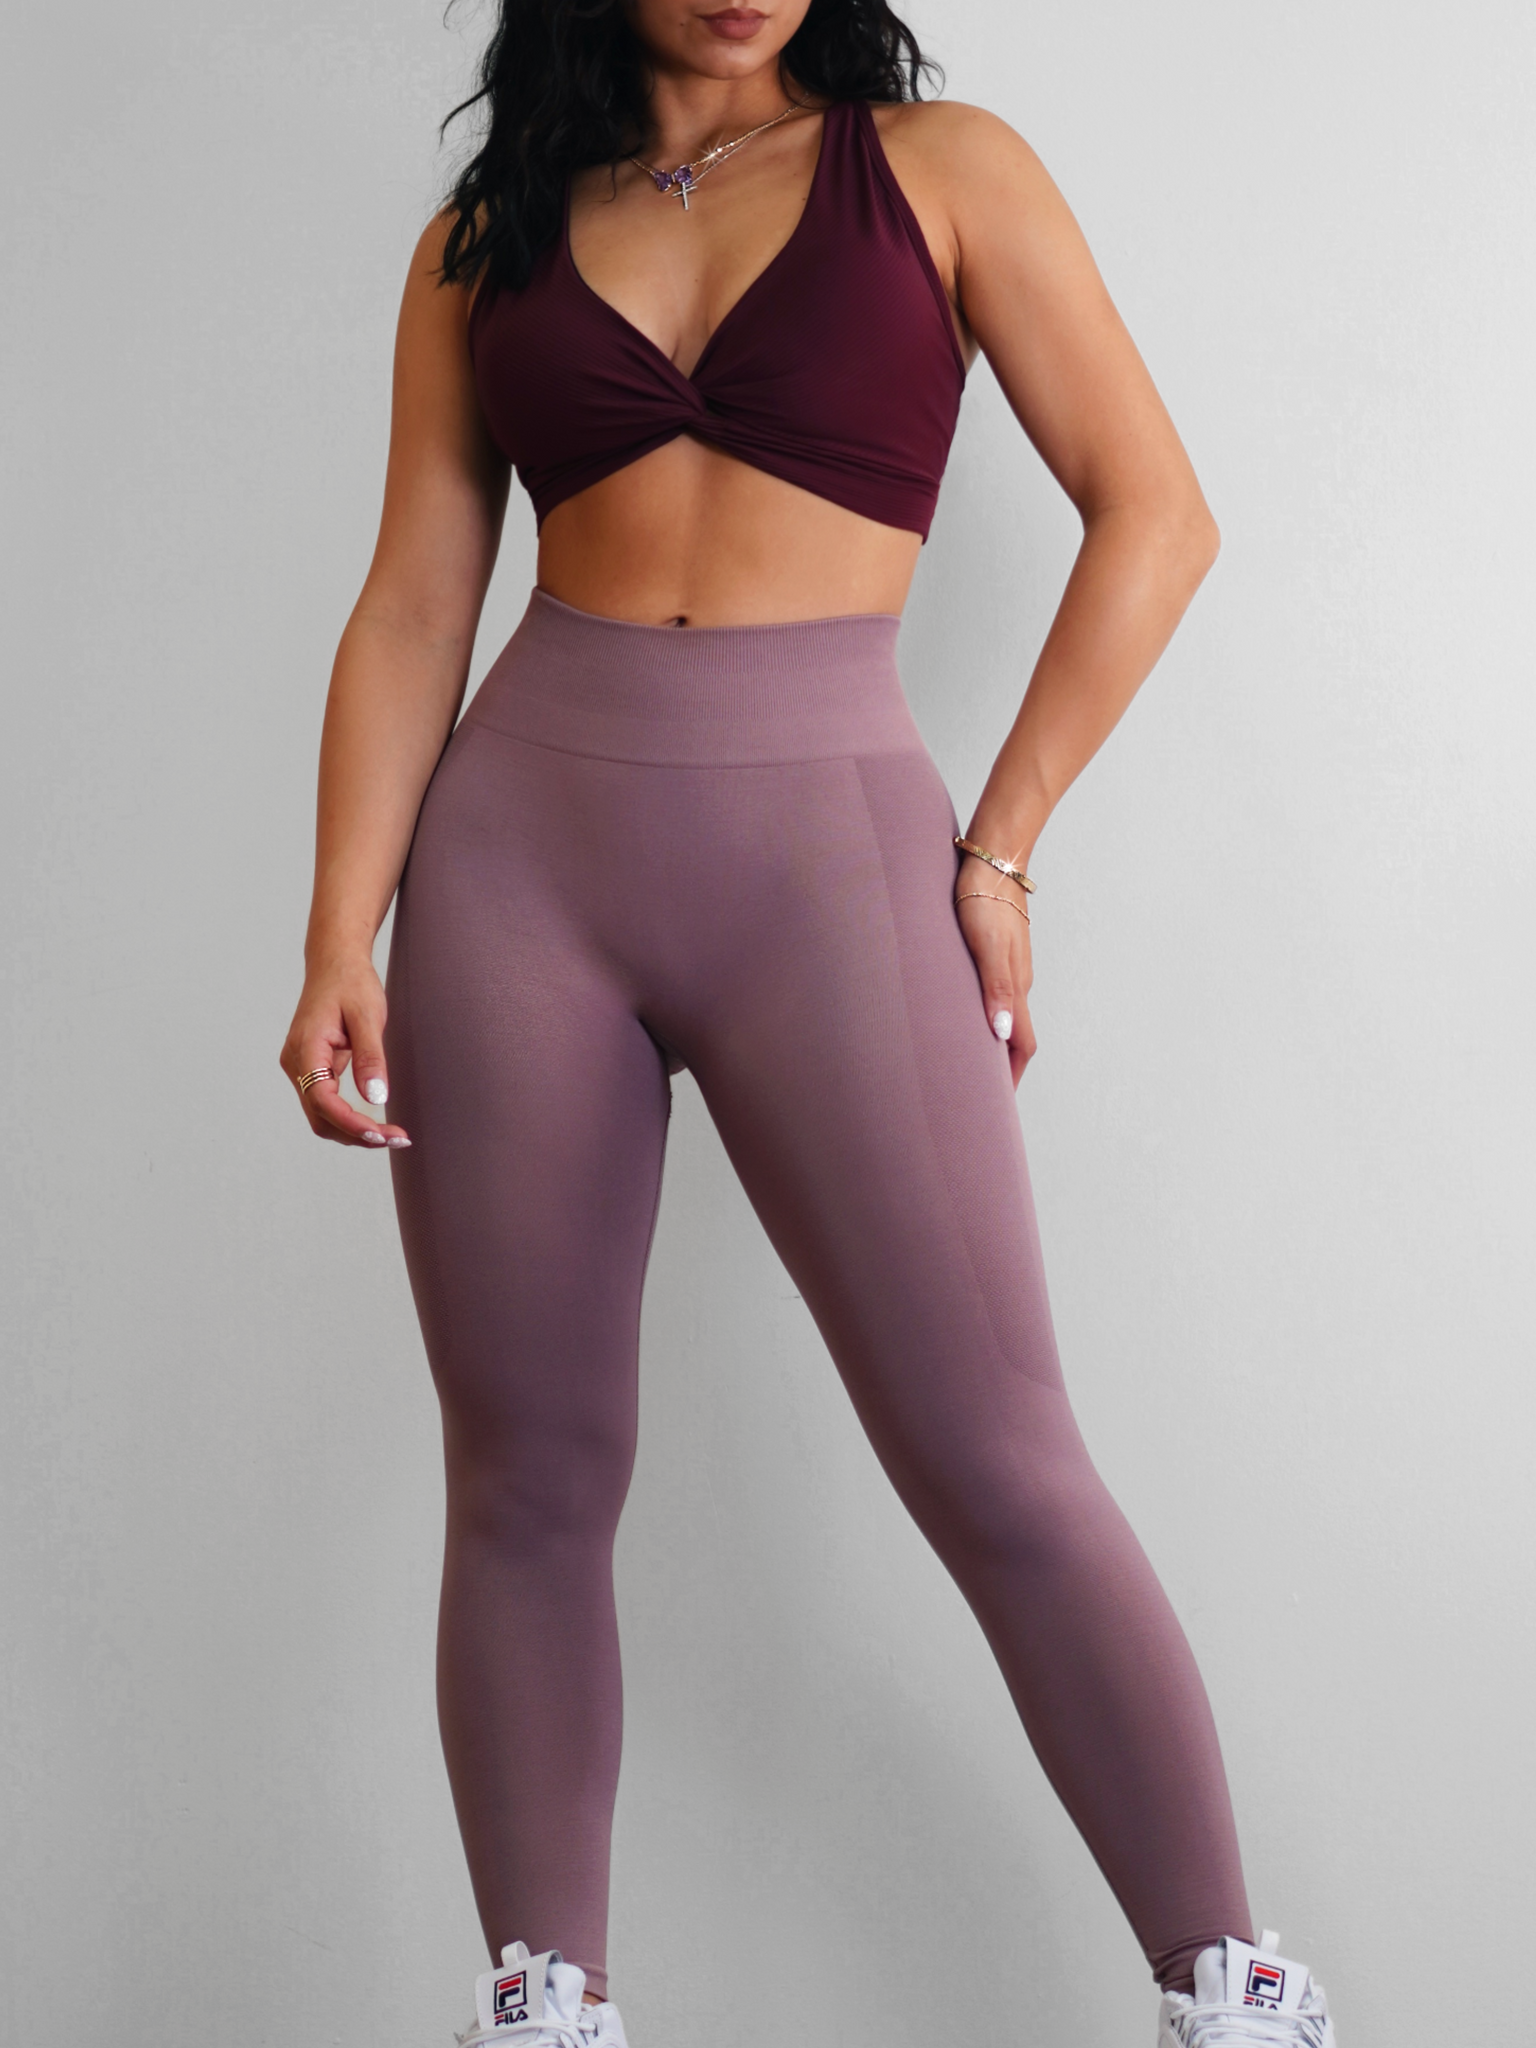 Workout set size medium new high waisted leggings crop top scrunch leggings  New